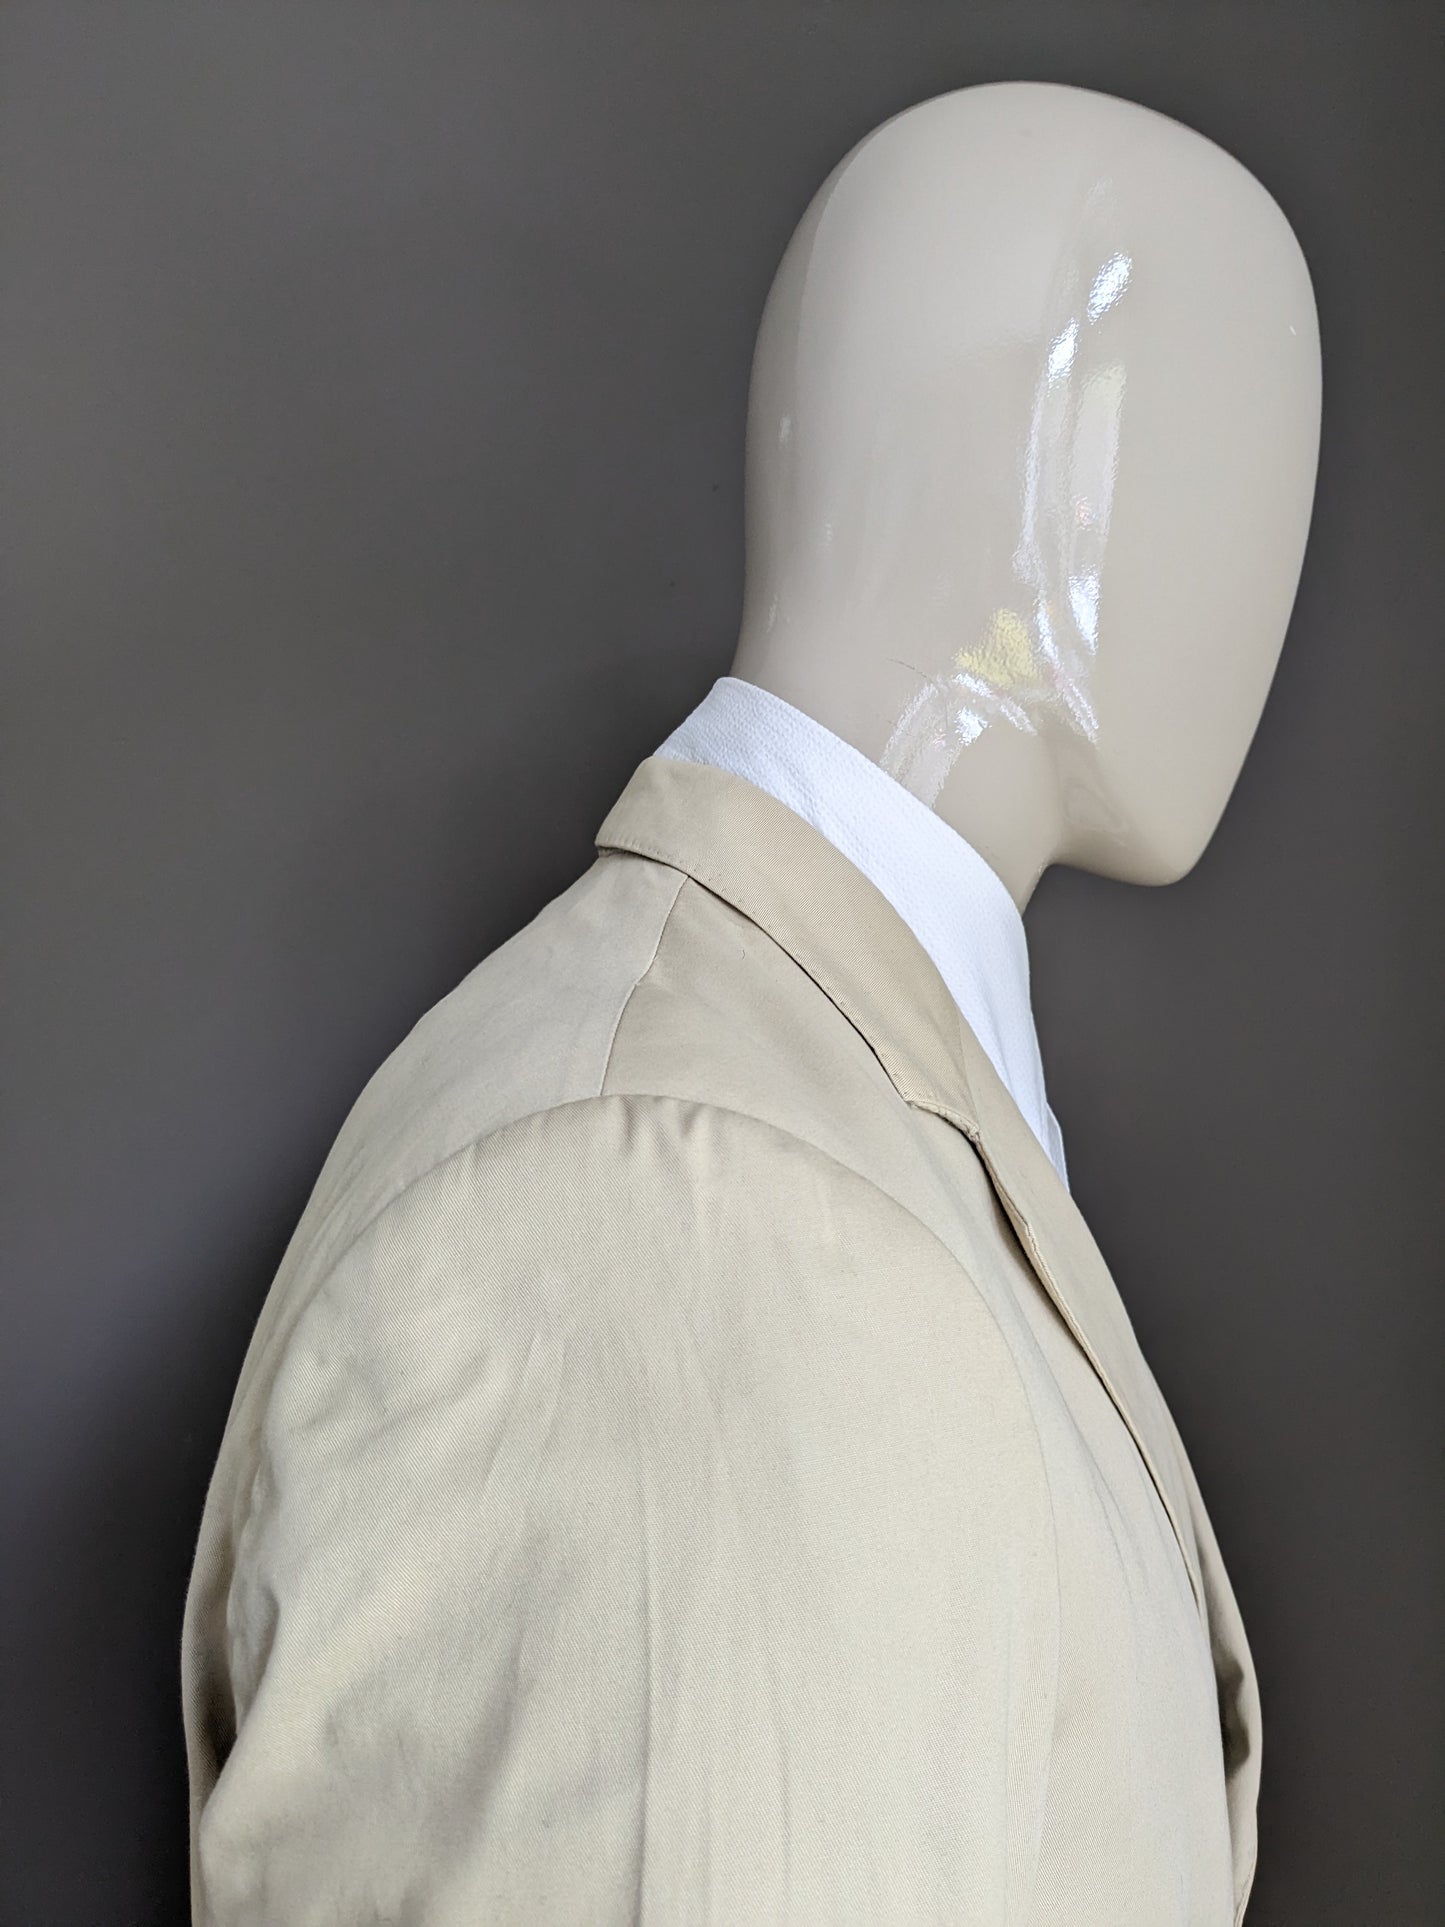 Burberry London Cotton jacket. Beige colored. Size 26 (52 / L)